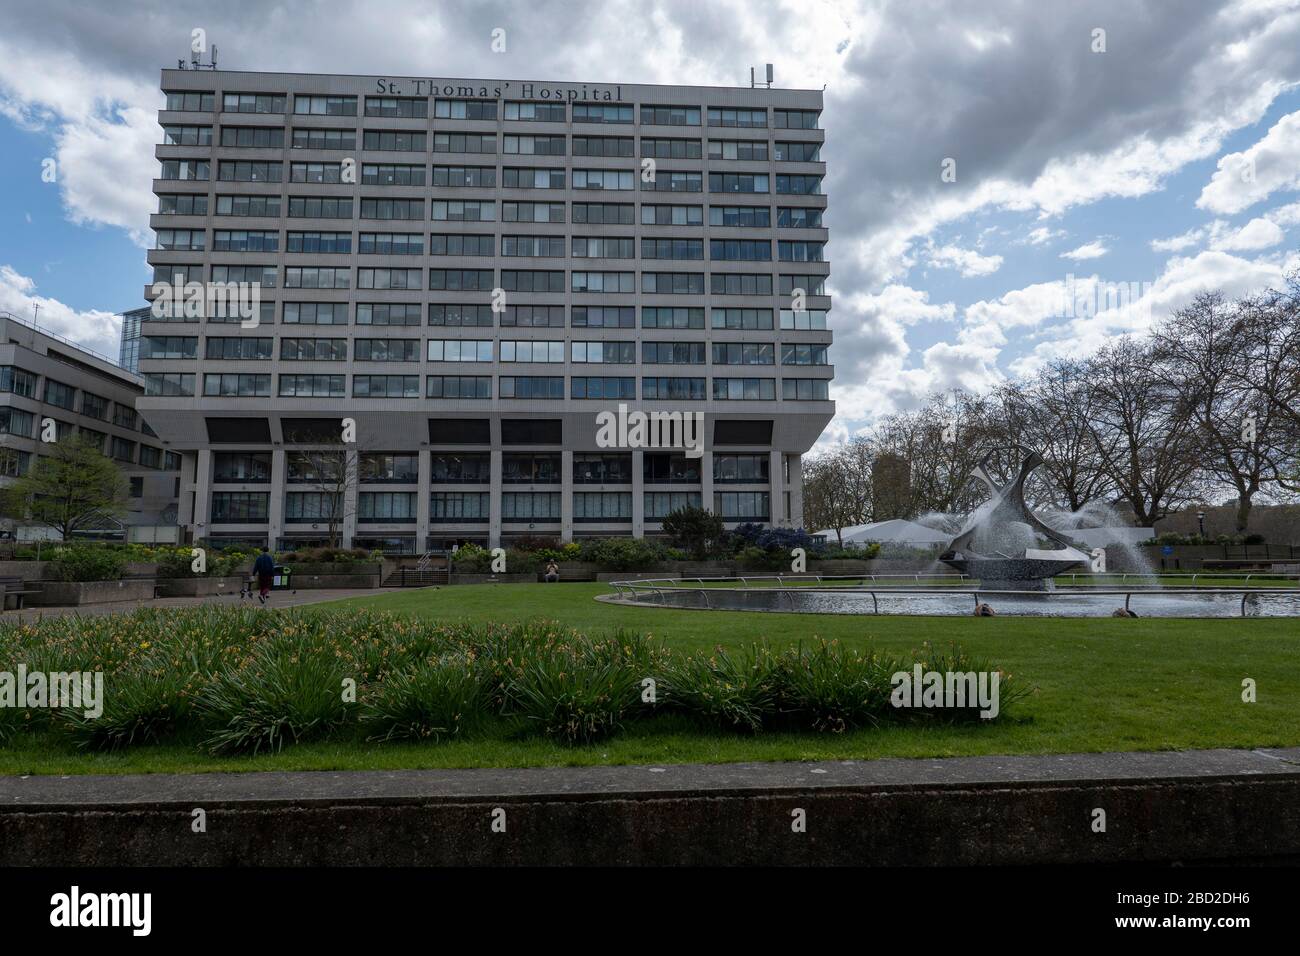 Londres, Royaume-Uni. 6 avril 2020. À l'extérieur de l'hôpital St Thomas de Westminster pendant la pandémie de coronavirus. (Photo de Sam Mellish / Alay Live News) Banque D'Images